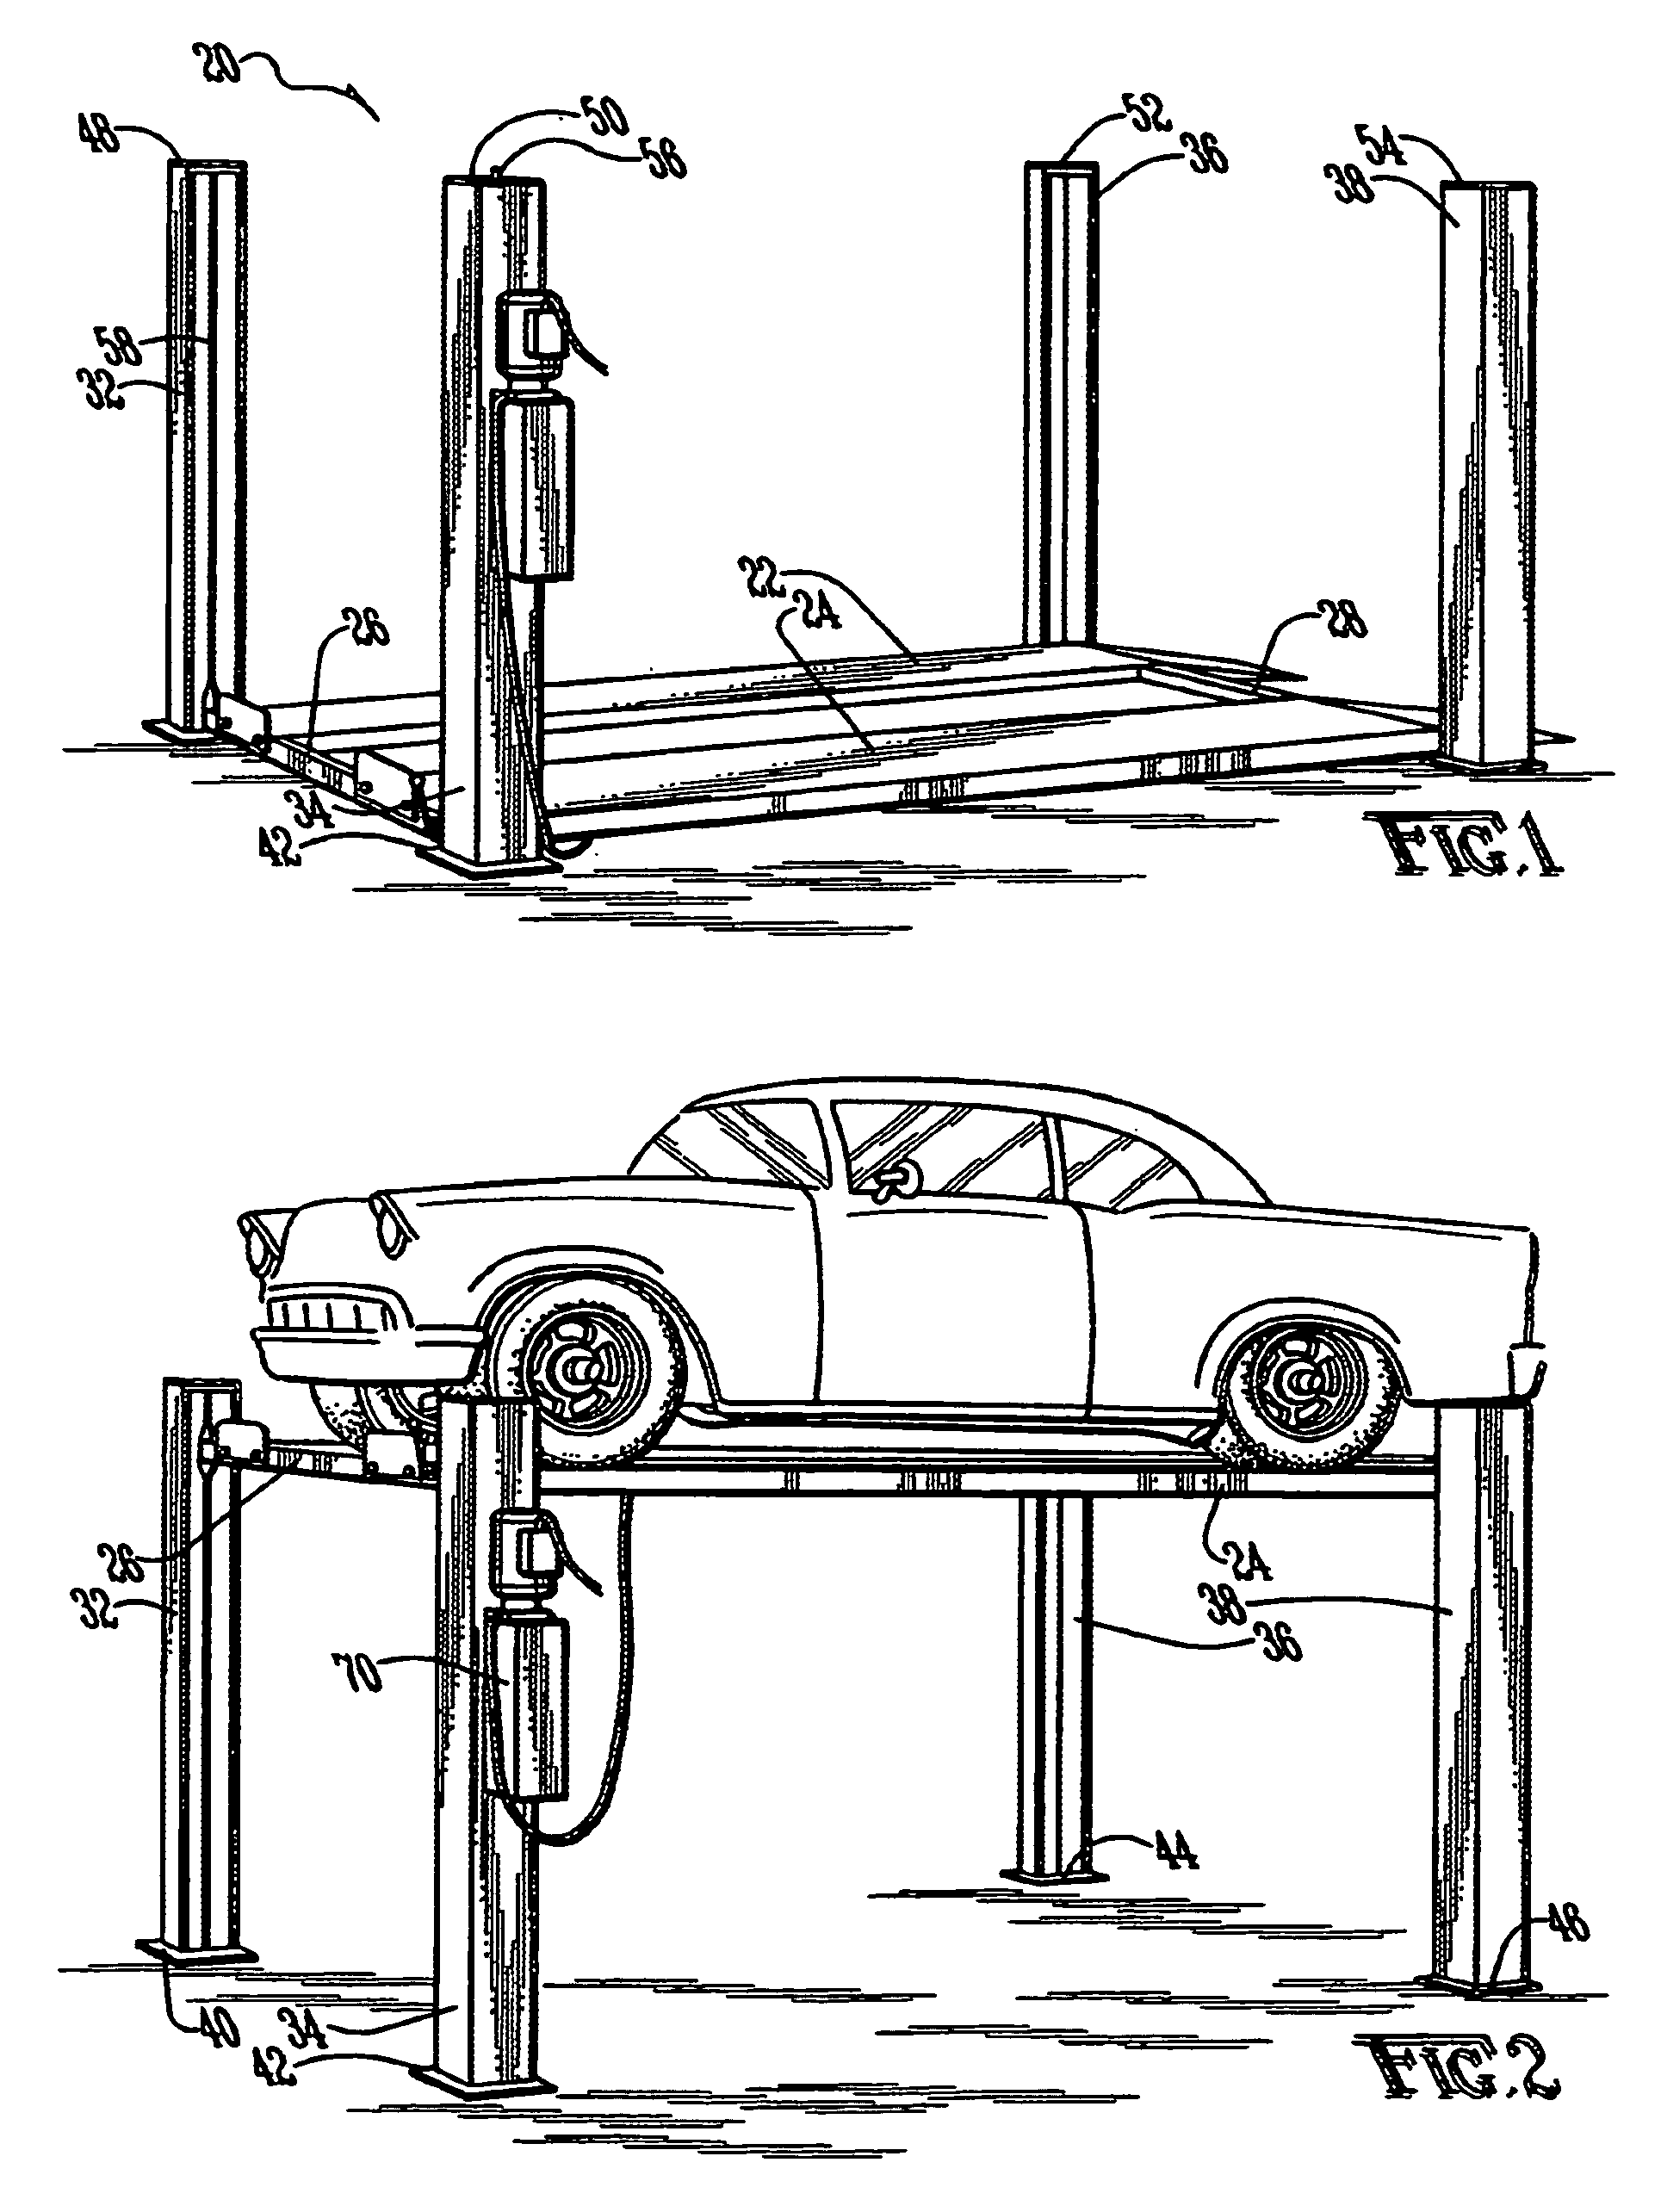 Hydraulic vehicle lift